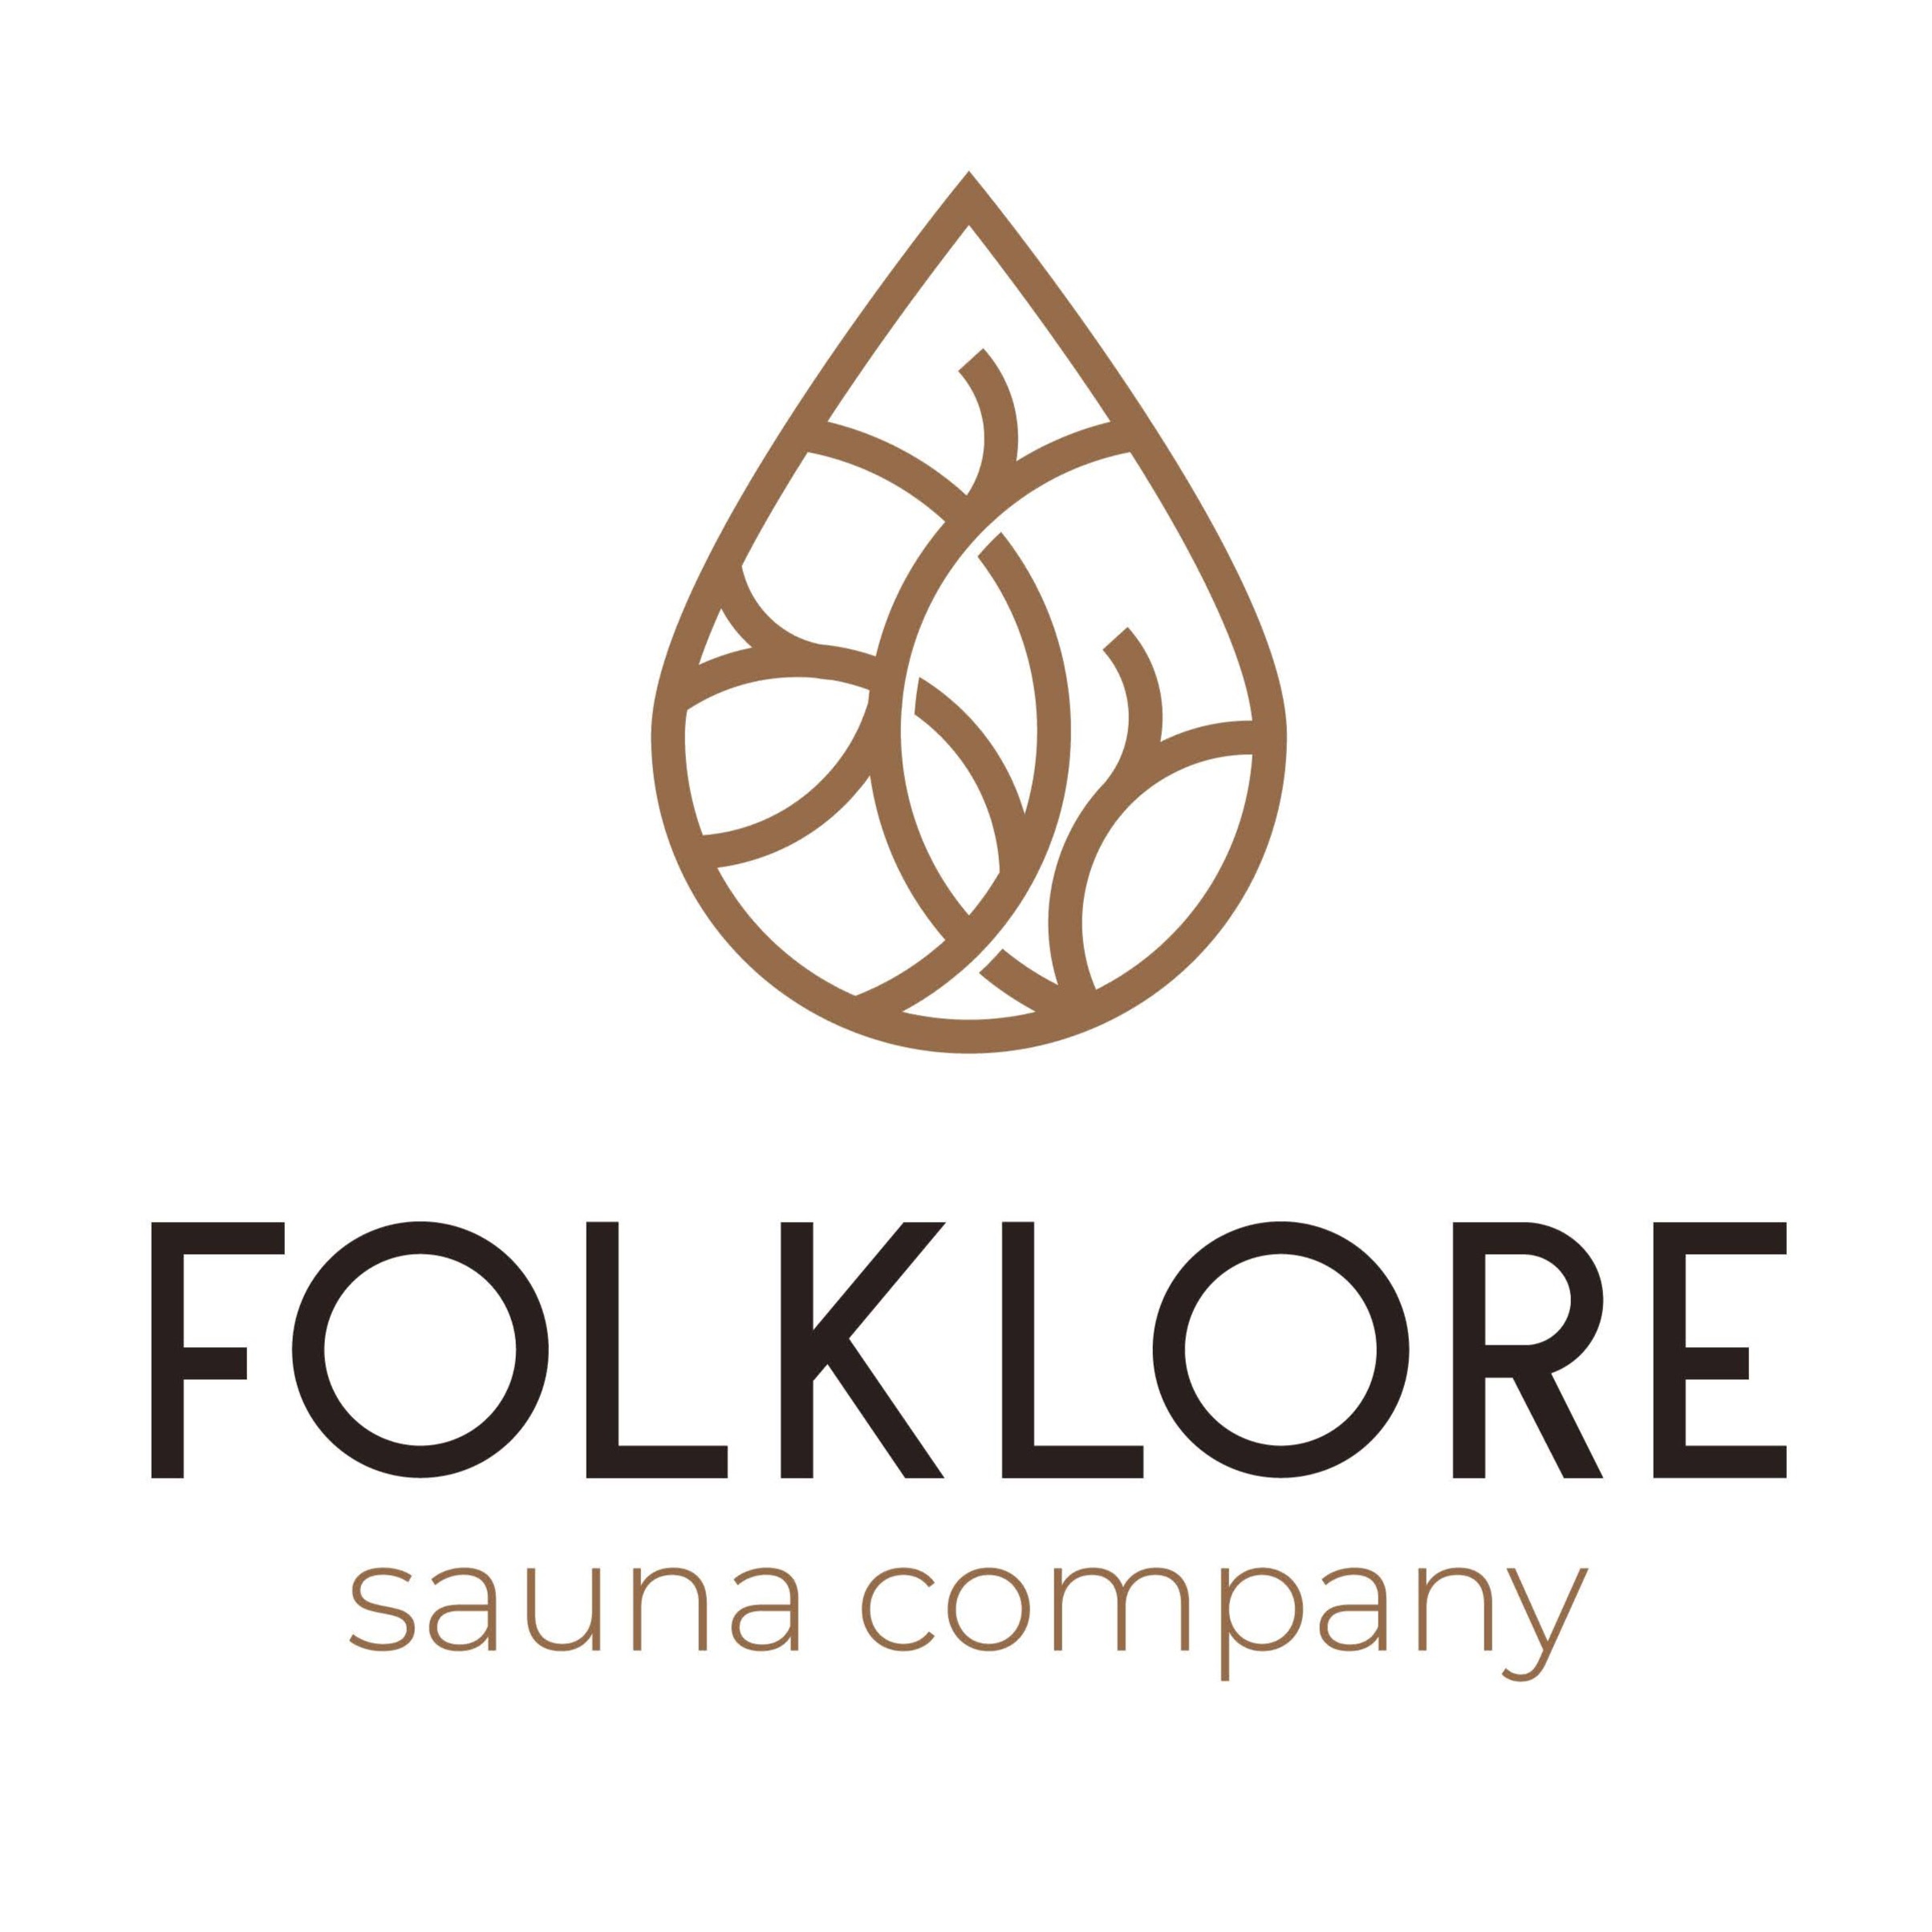 Folklore Sauna Company